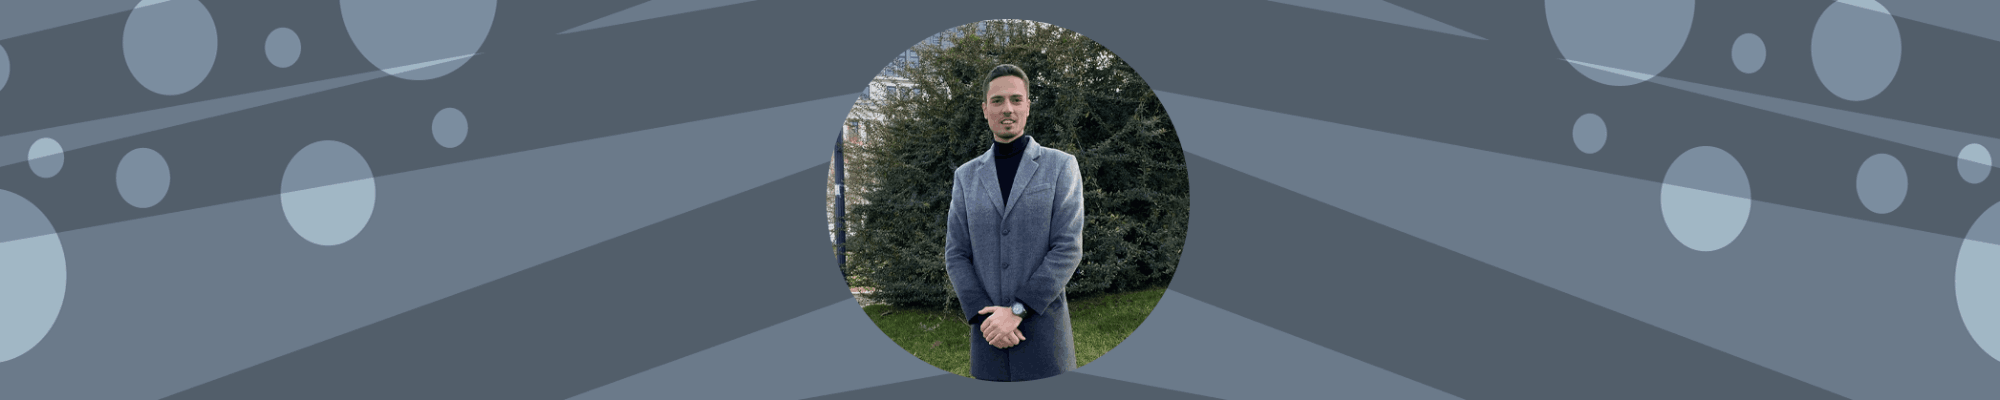 Възможността да откриеш вдъхновение за създаването на собствен бизнес - интервю с Петър Младенов